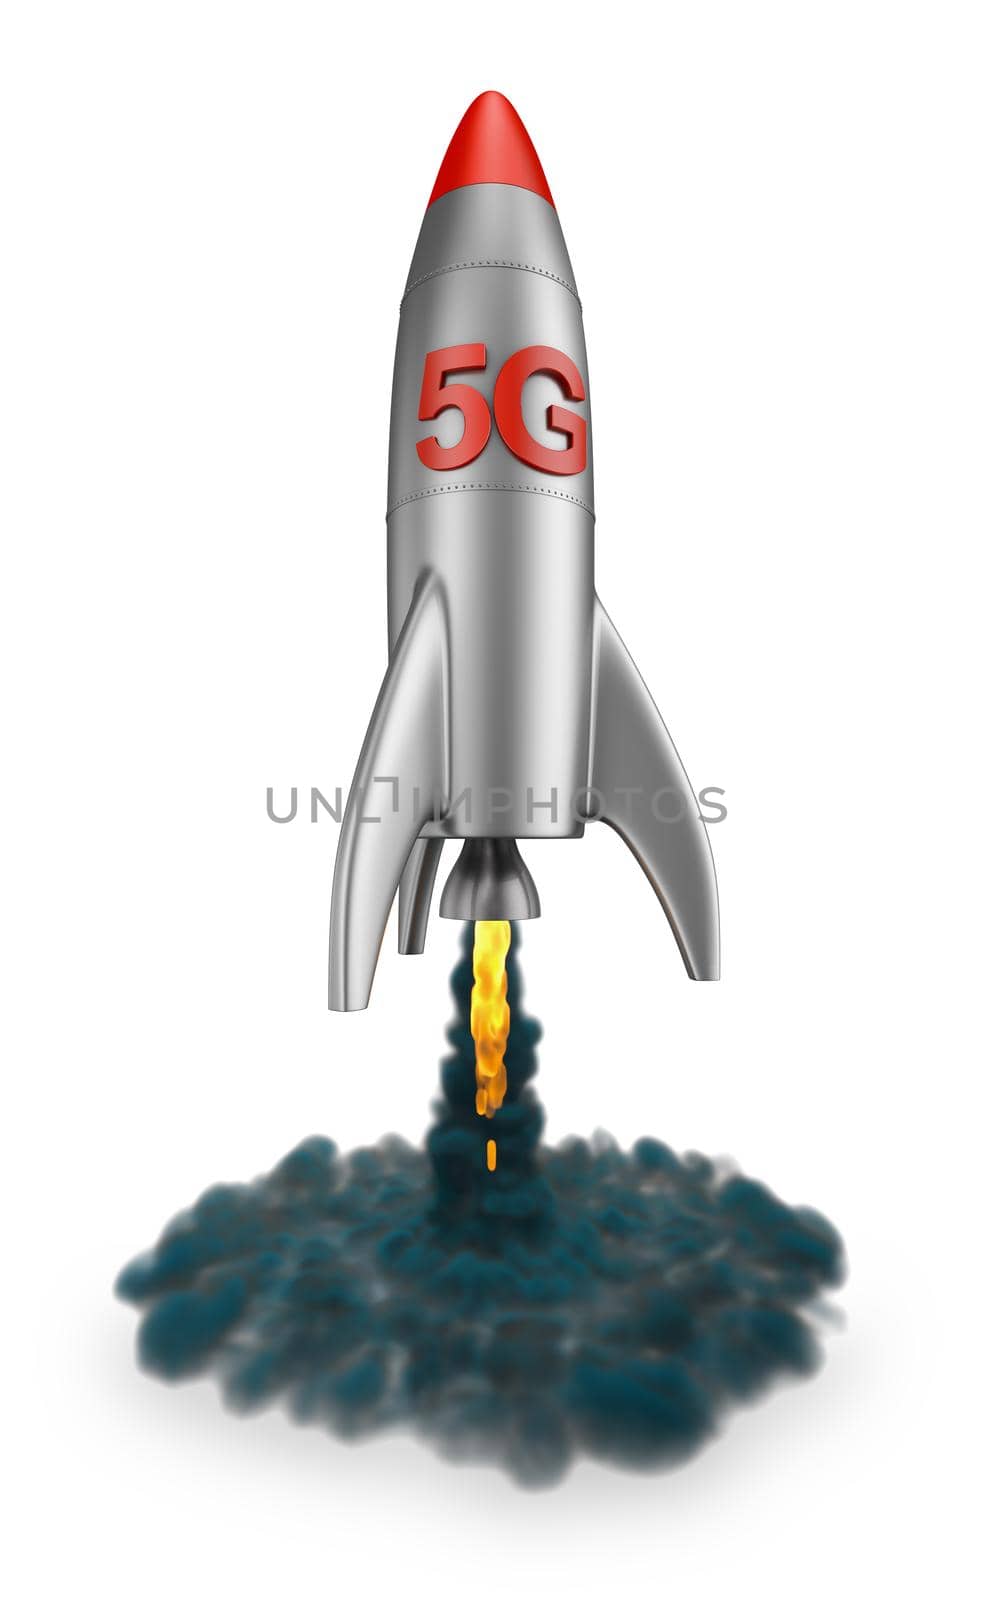 5G rocket flies up by rommma